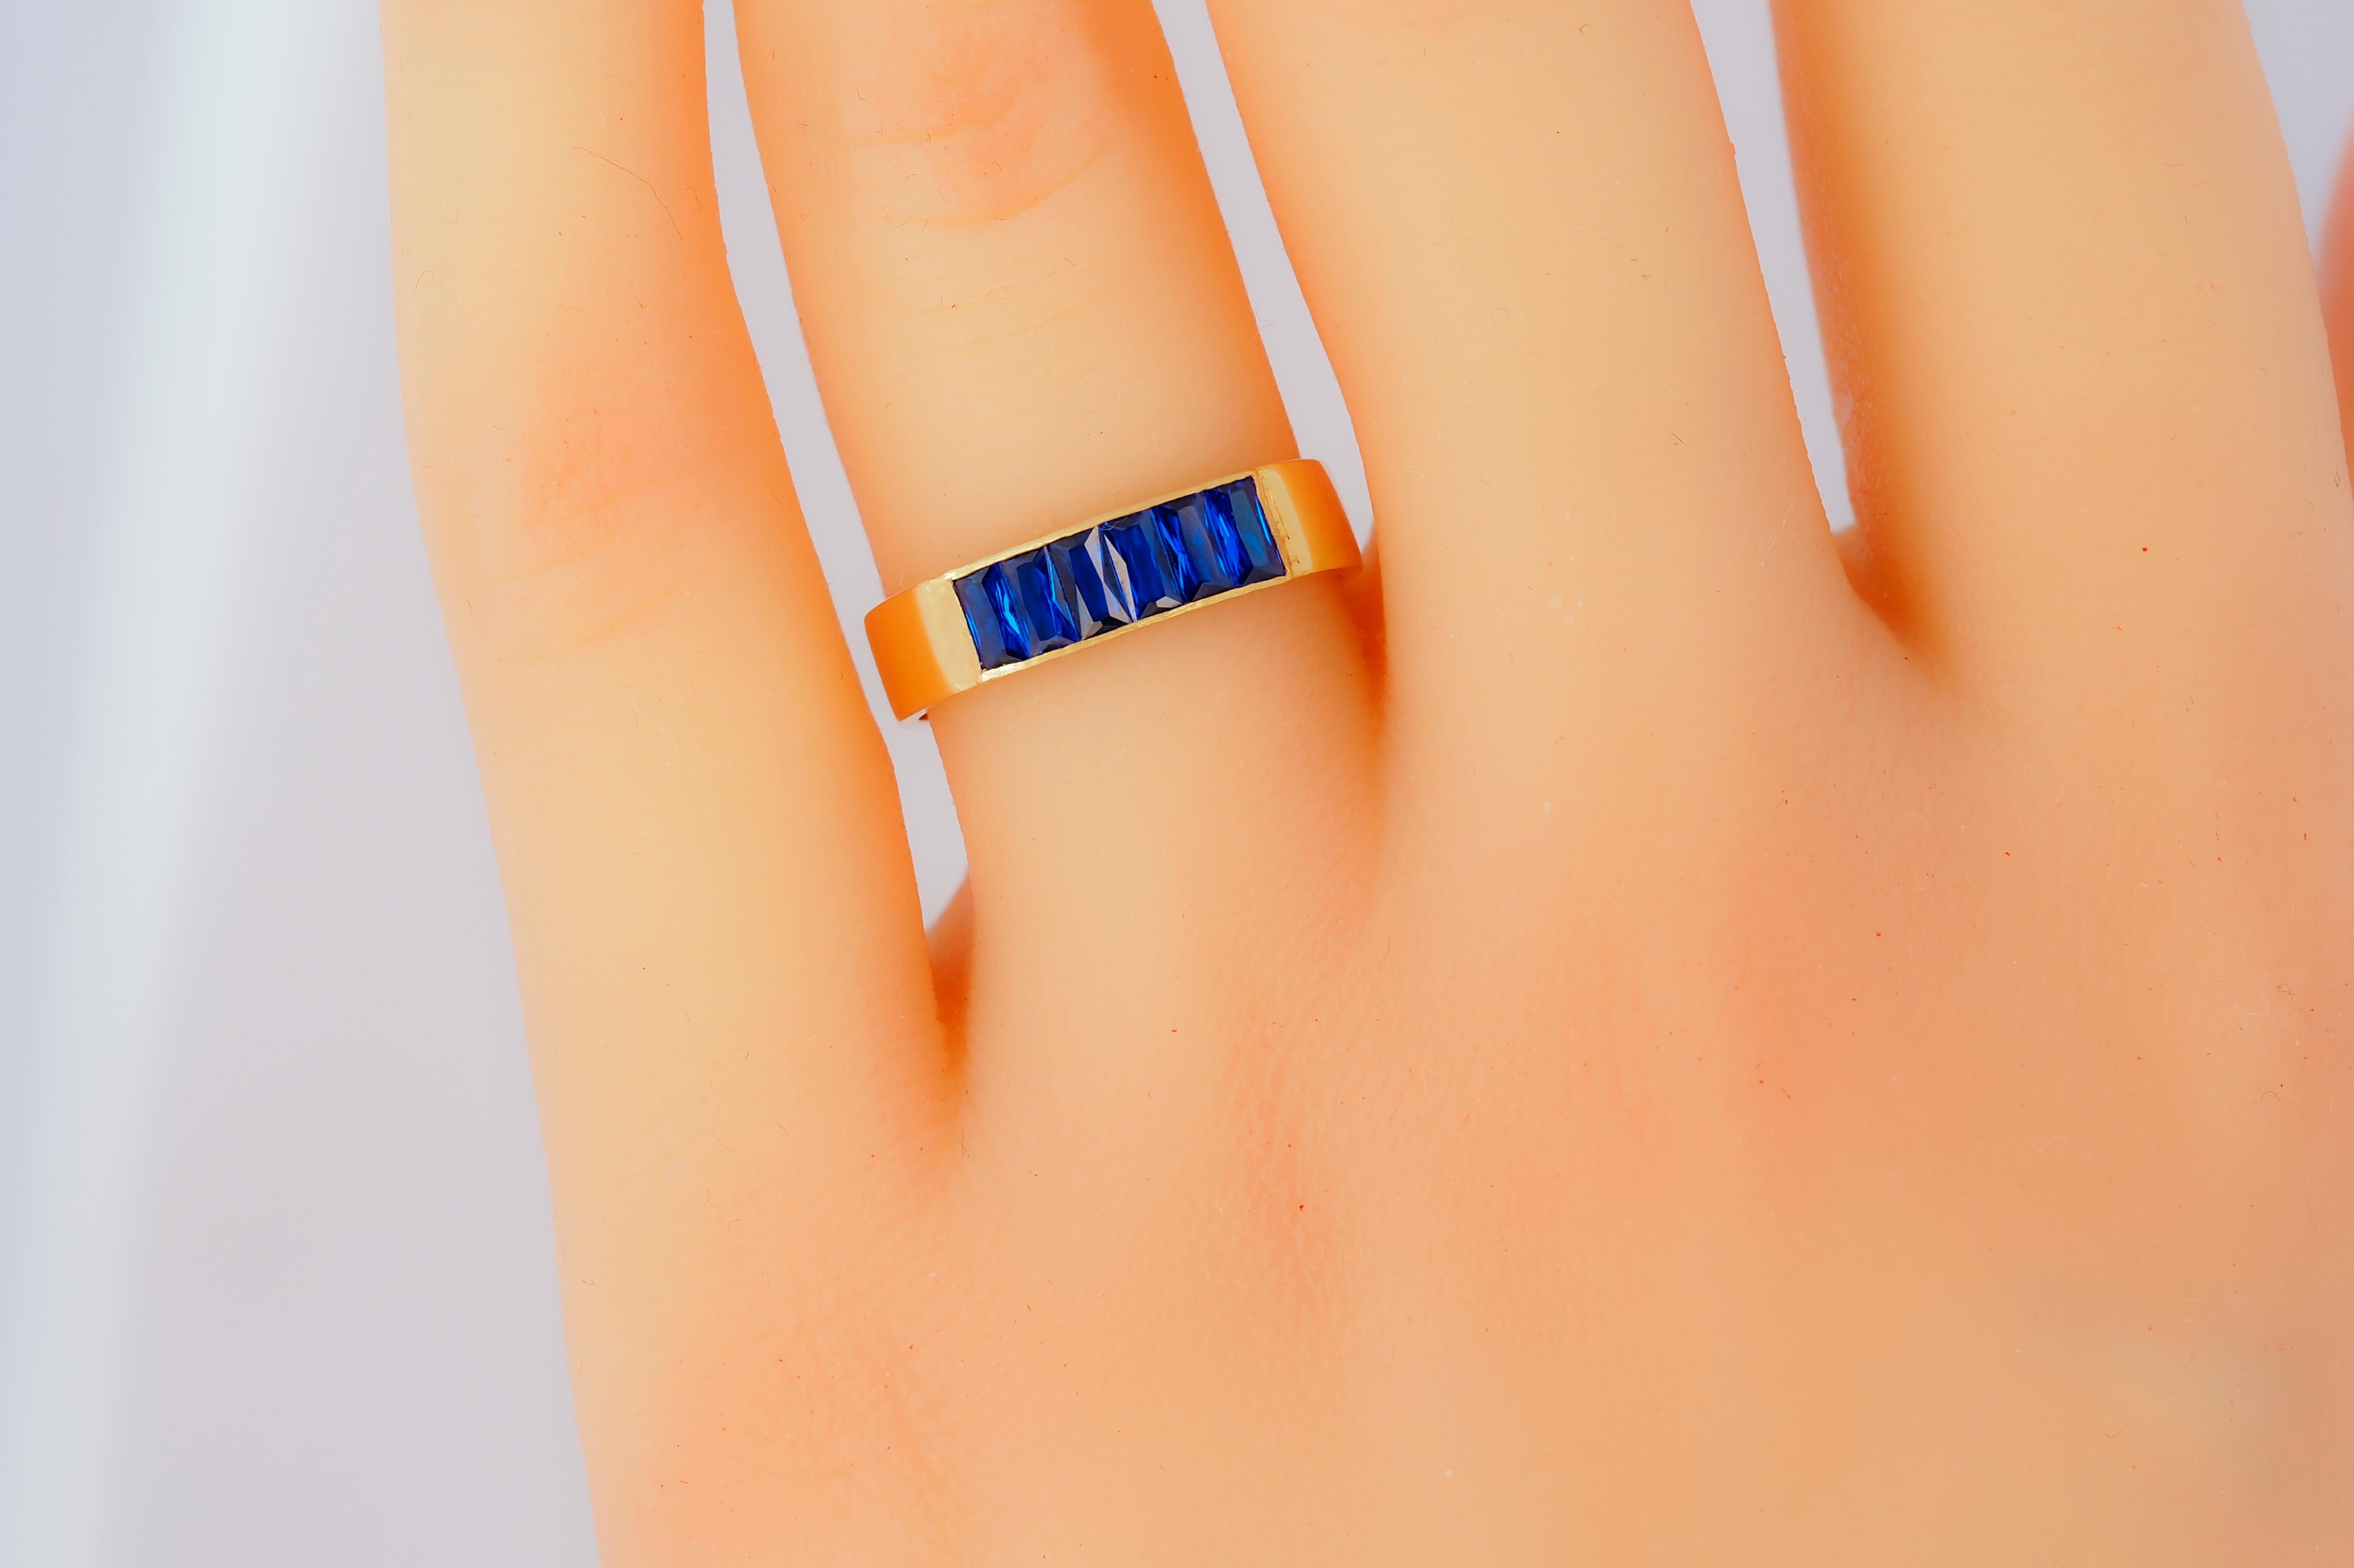 Baguette blaue Edelsteine 14k Gold halbe Ewigkeit Ring. 14k Goldring mit blauen Laborsaphiren.  Minimalistischer Saphir-Herrenring, Unisex-Ring. Geburtsstein-Ringe für Männer. Goldring der Halbwende.

Metall: 14k Gold
Gewicht: 2 g je nach